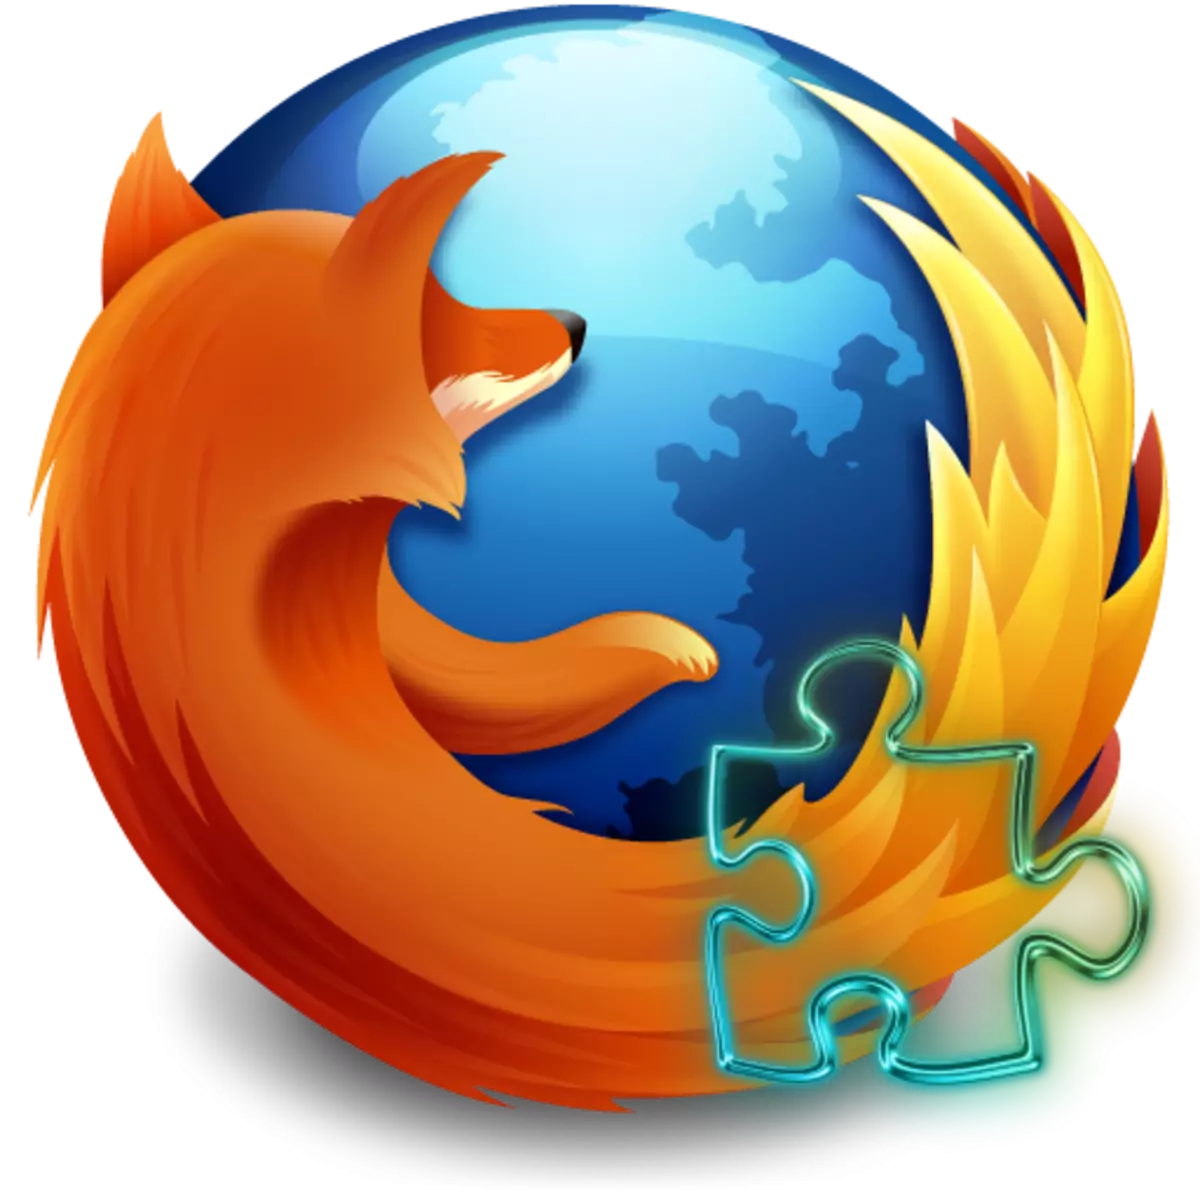 Athugaðu viðbætur í Mozilla Firefox